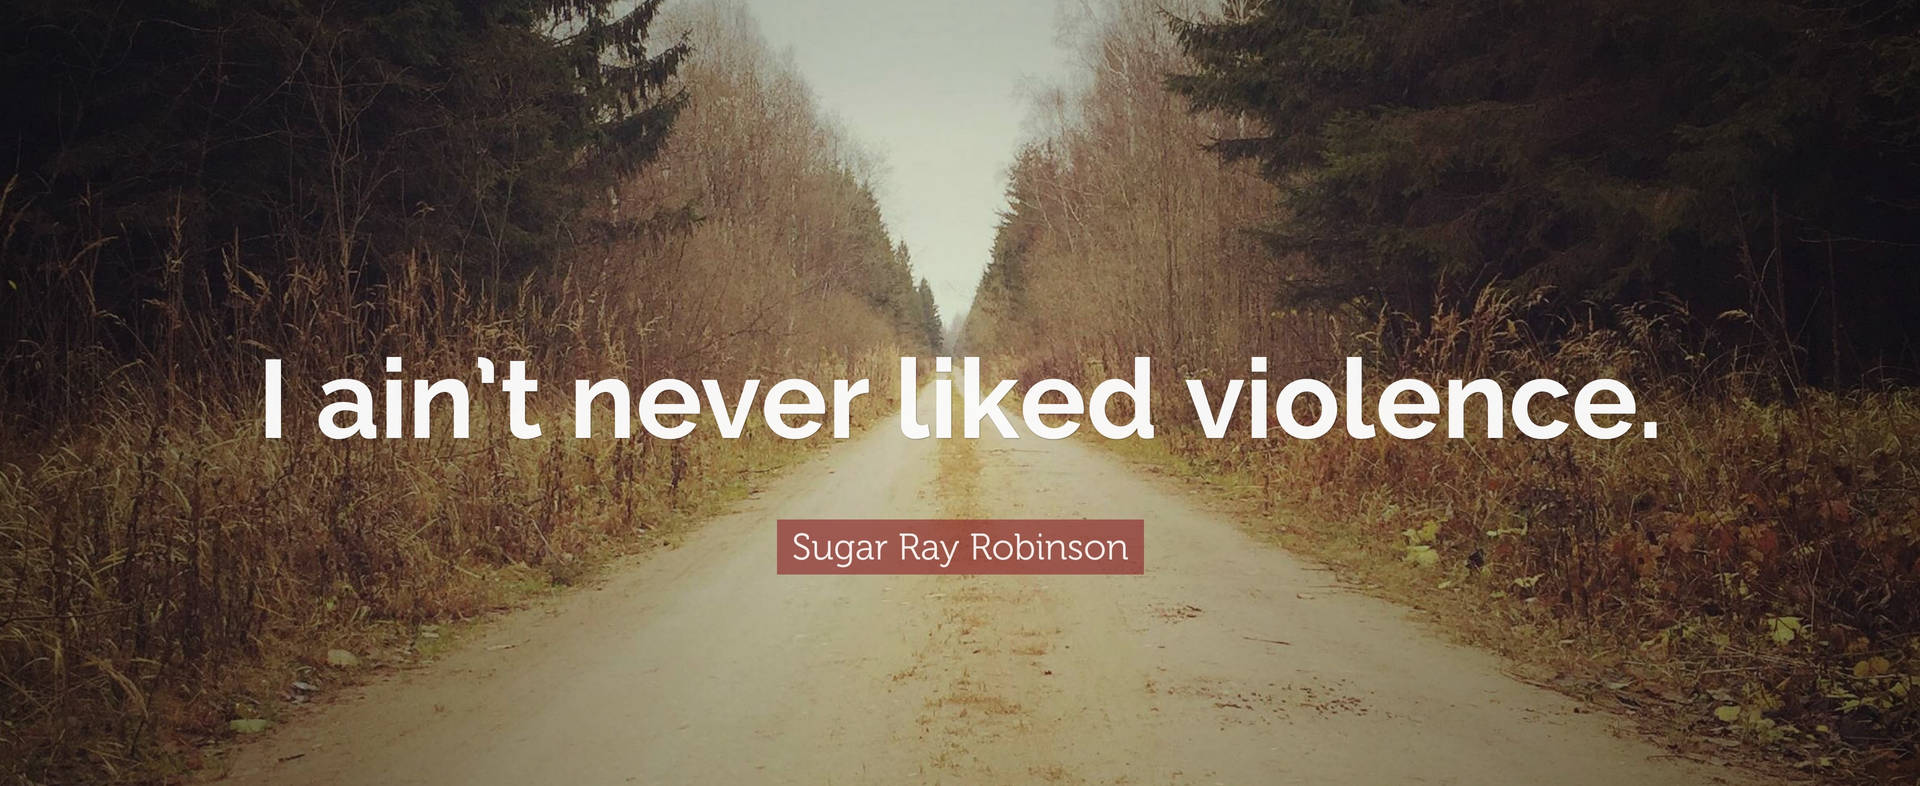 Sugar Ray Robinson Quote Wallpaper